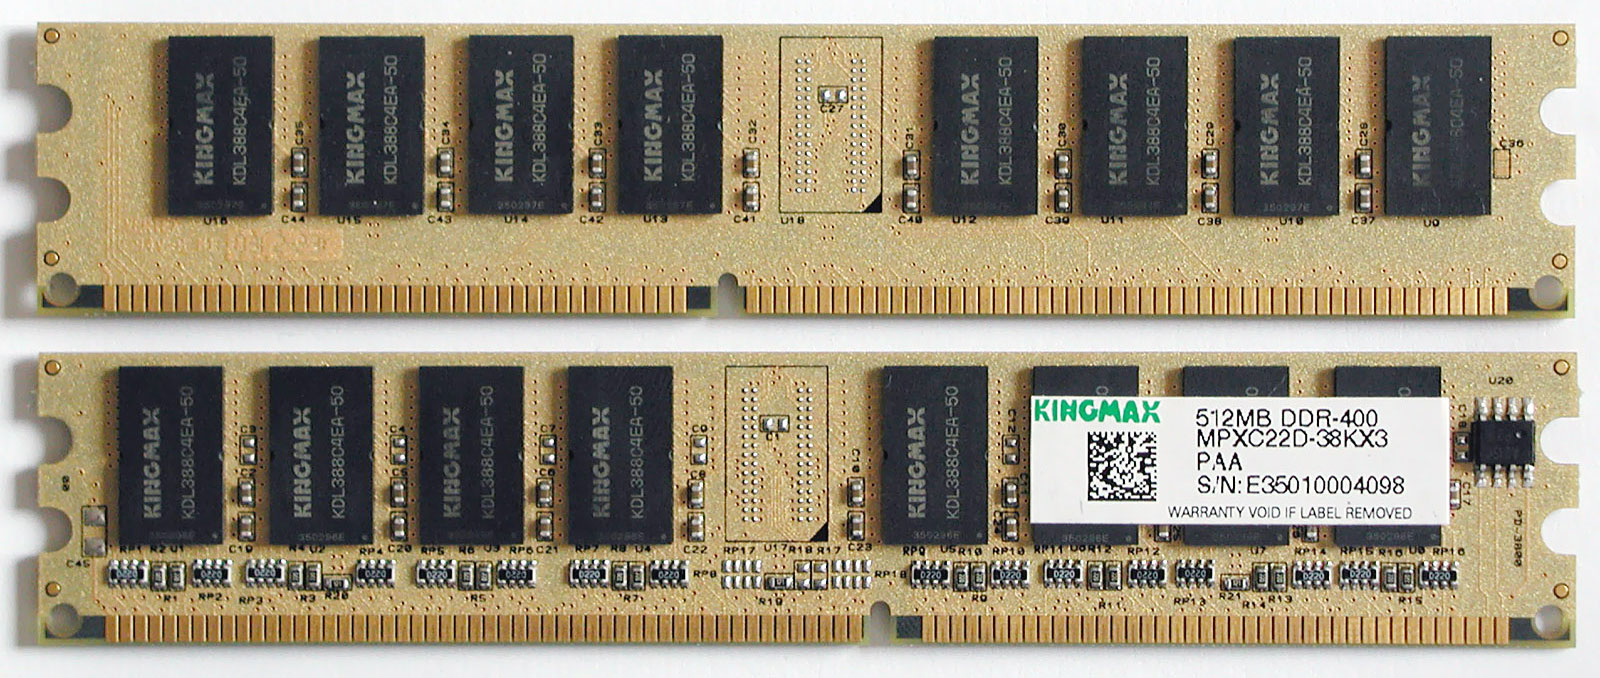 Nové paměti Kingmax DDR400 - vyplatí se?